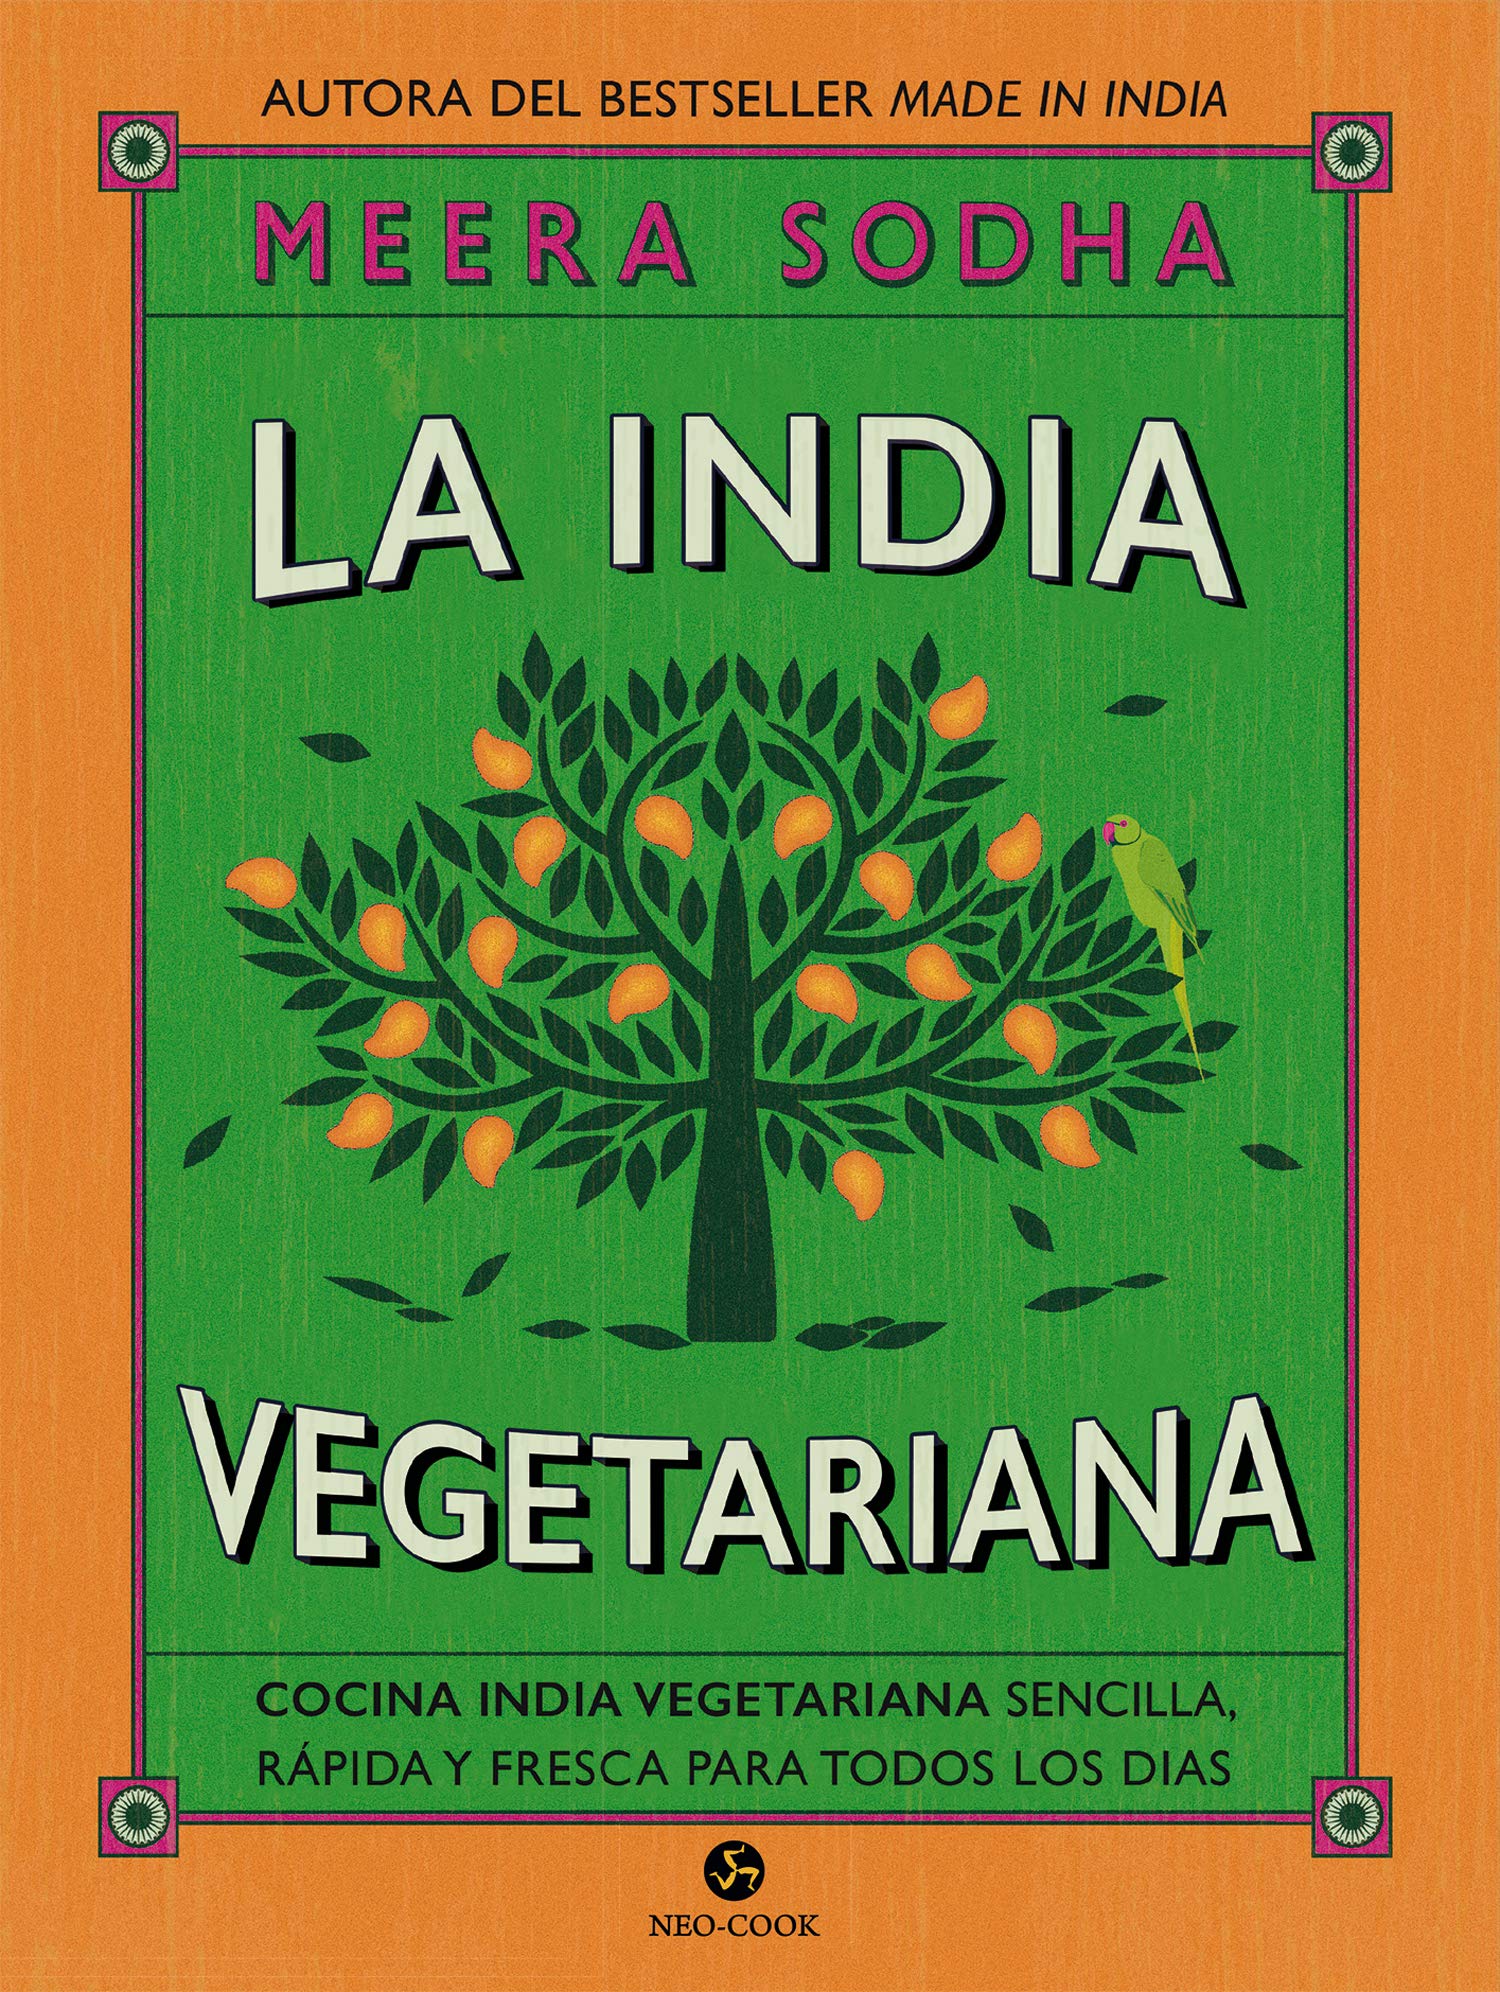  Libro - La india vegetariana - edición especial - libro curioso